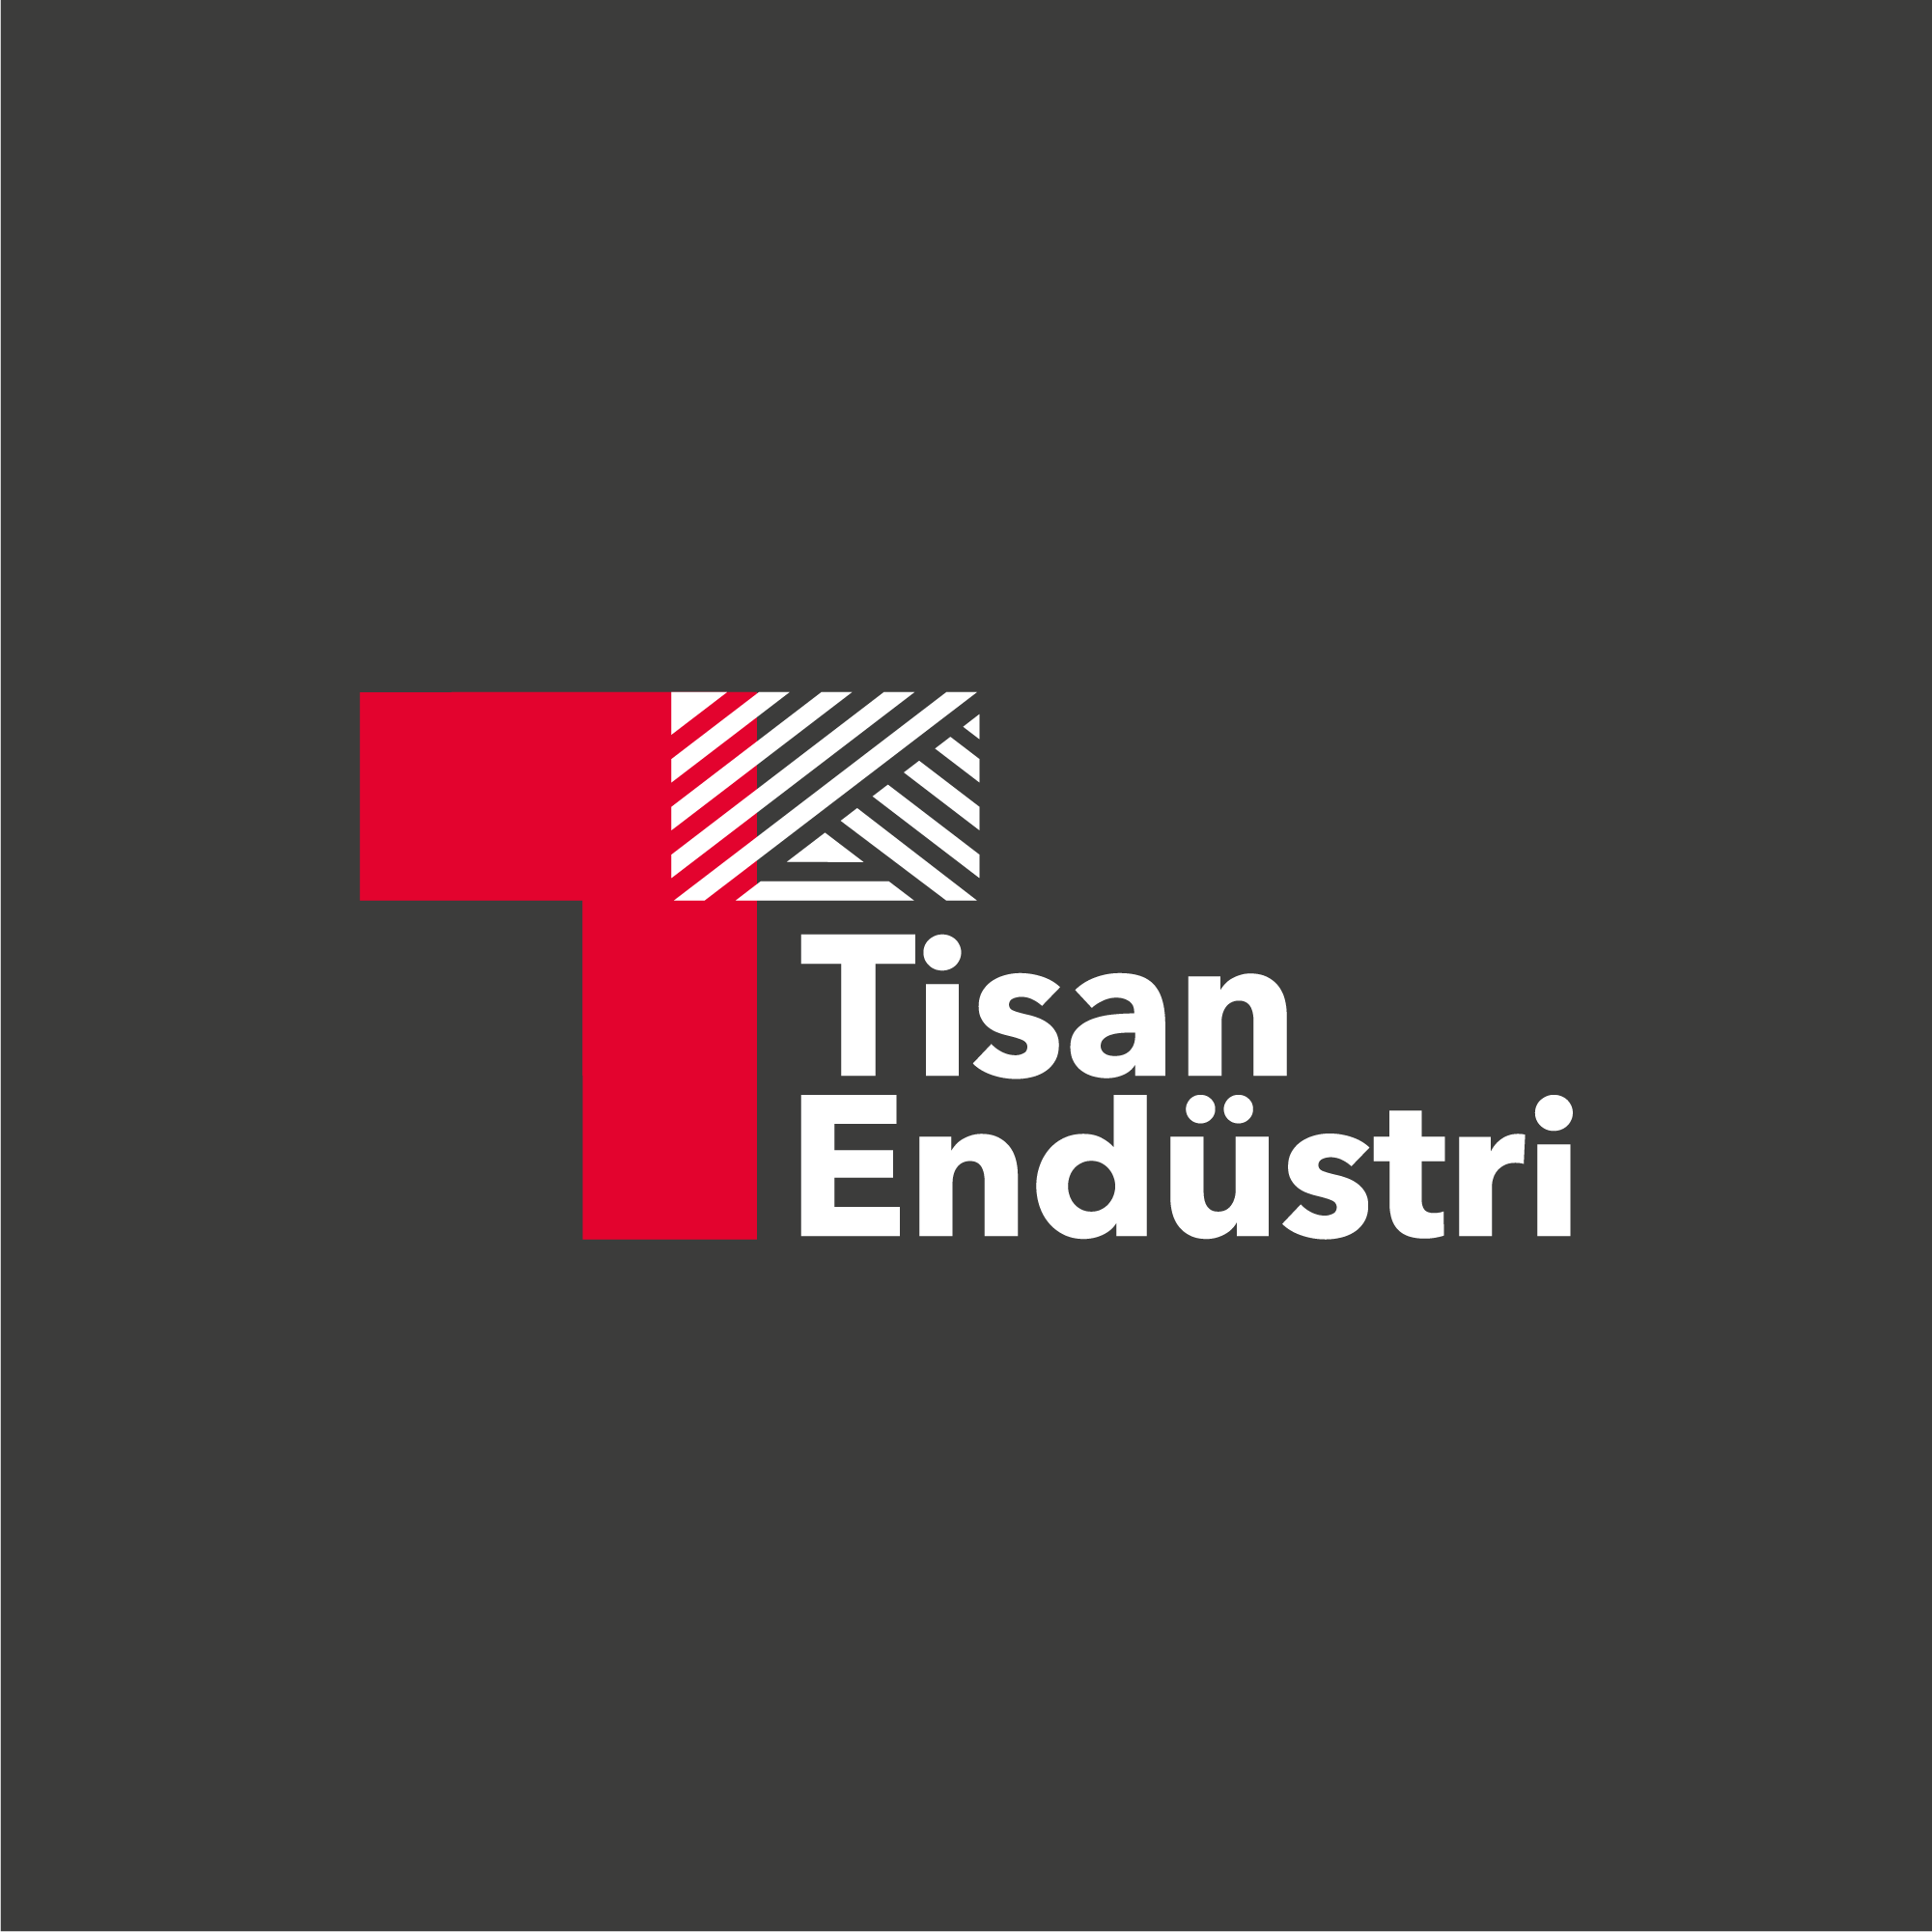 Tisan Endüstri